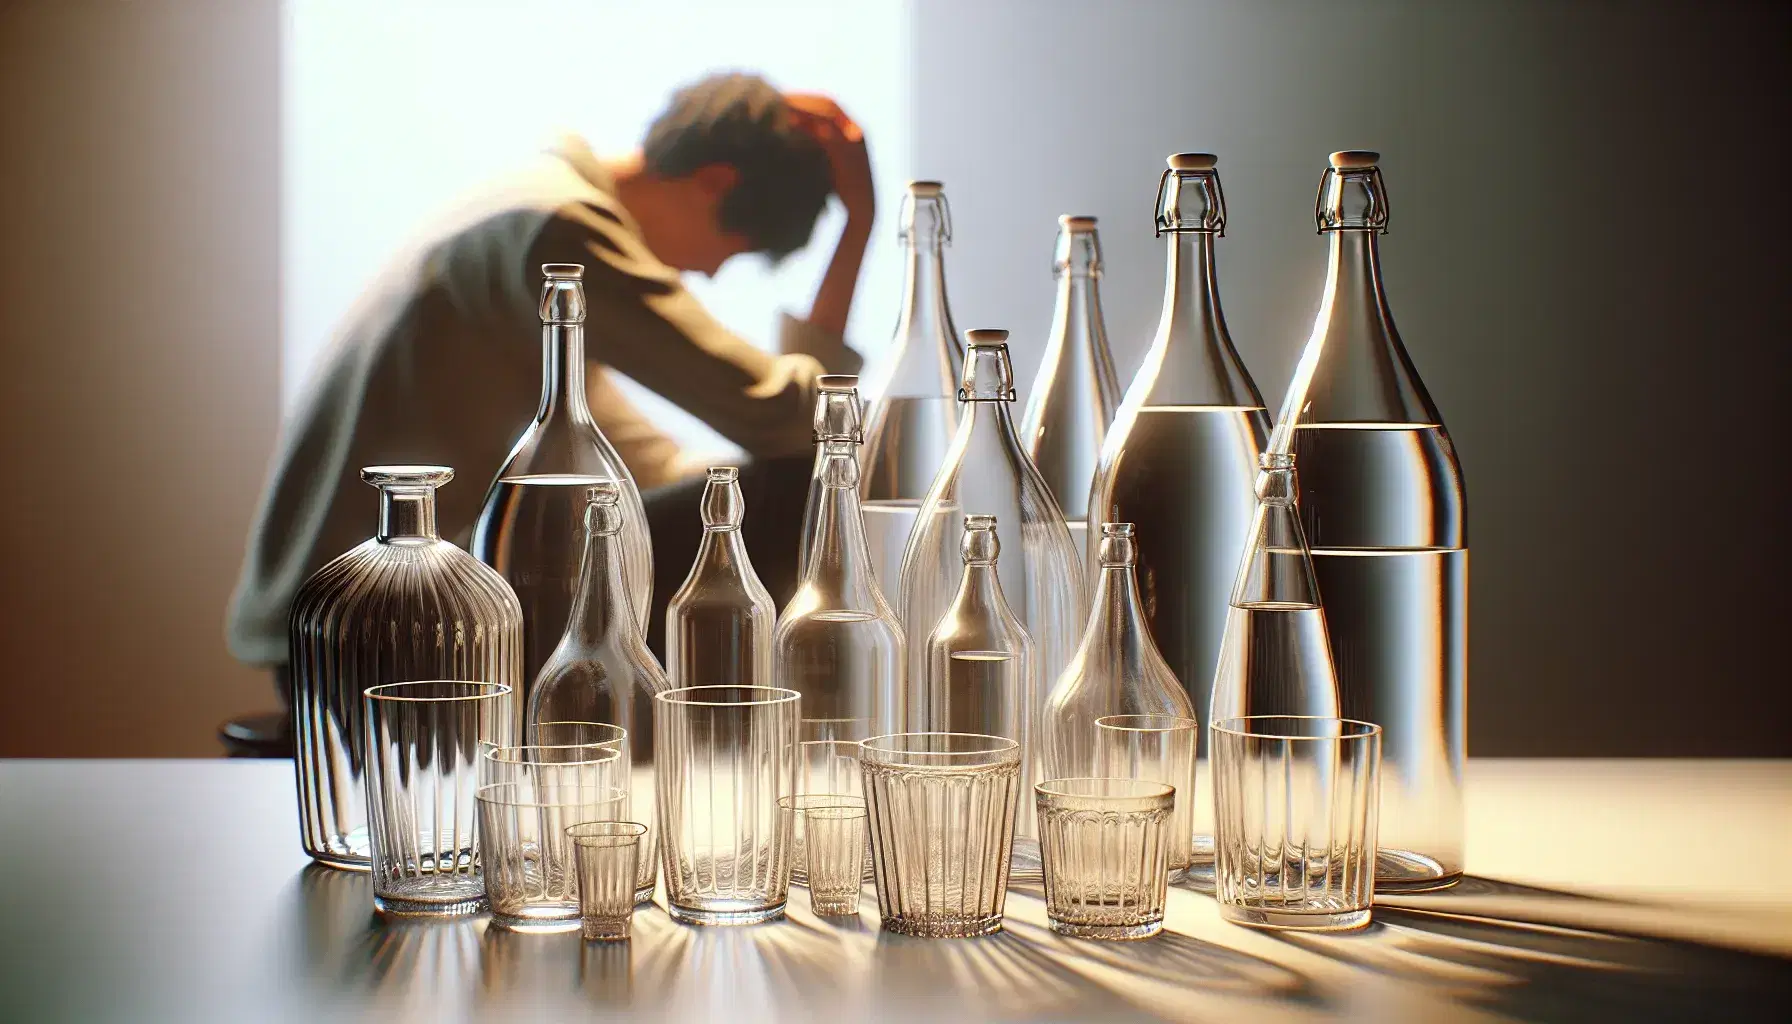 Colección de botellas de vidrio transparentes y vasos vacíos en superficie clara con figura humana desenfocada y preocupada al fondo.